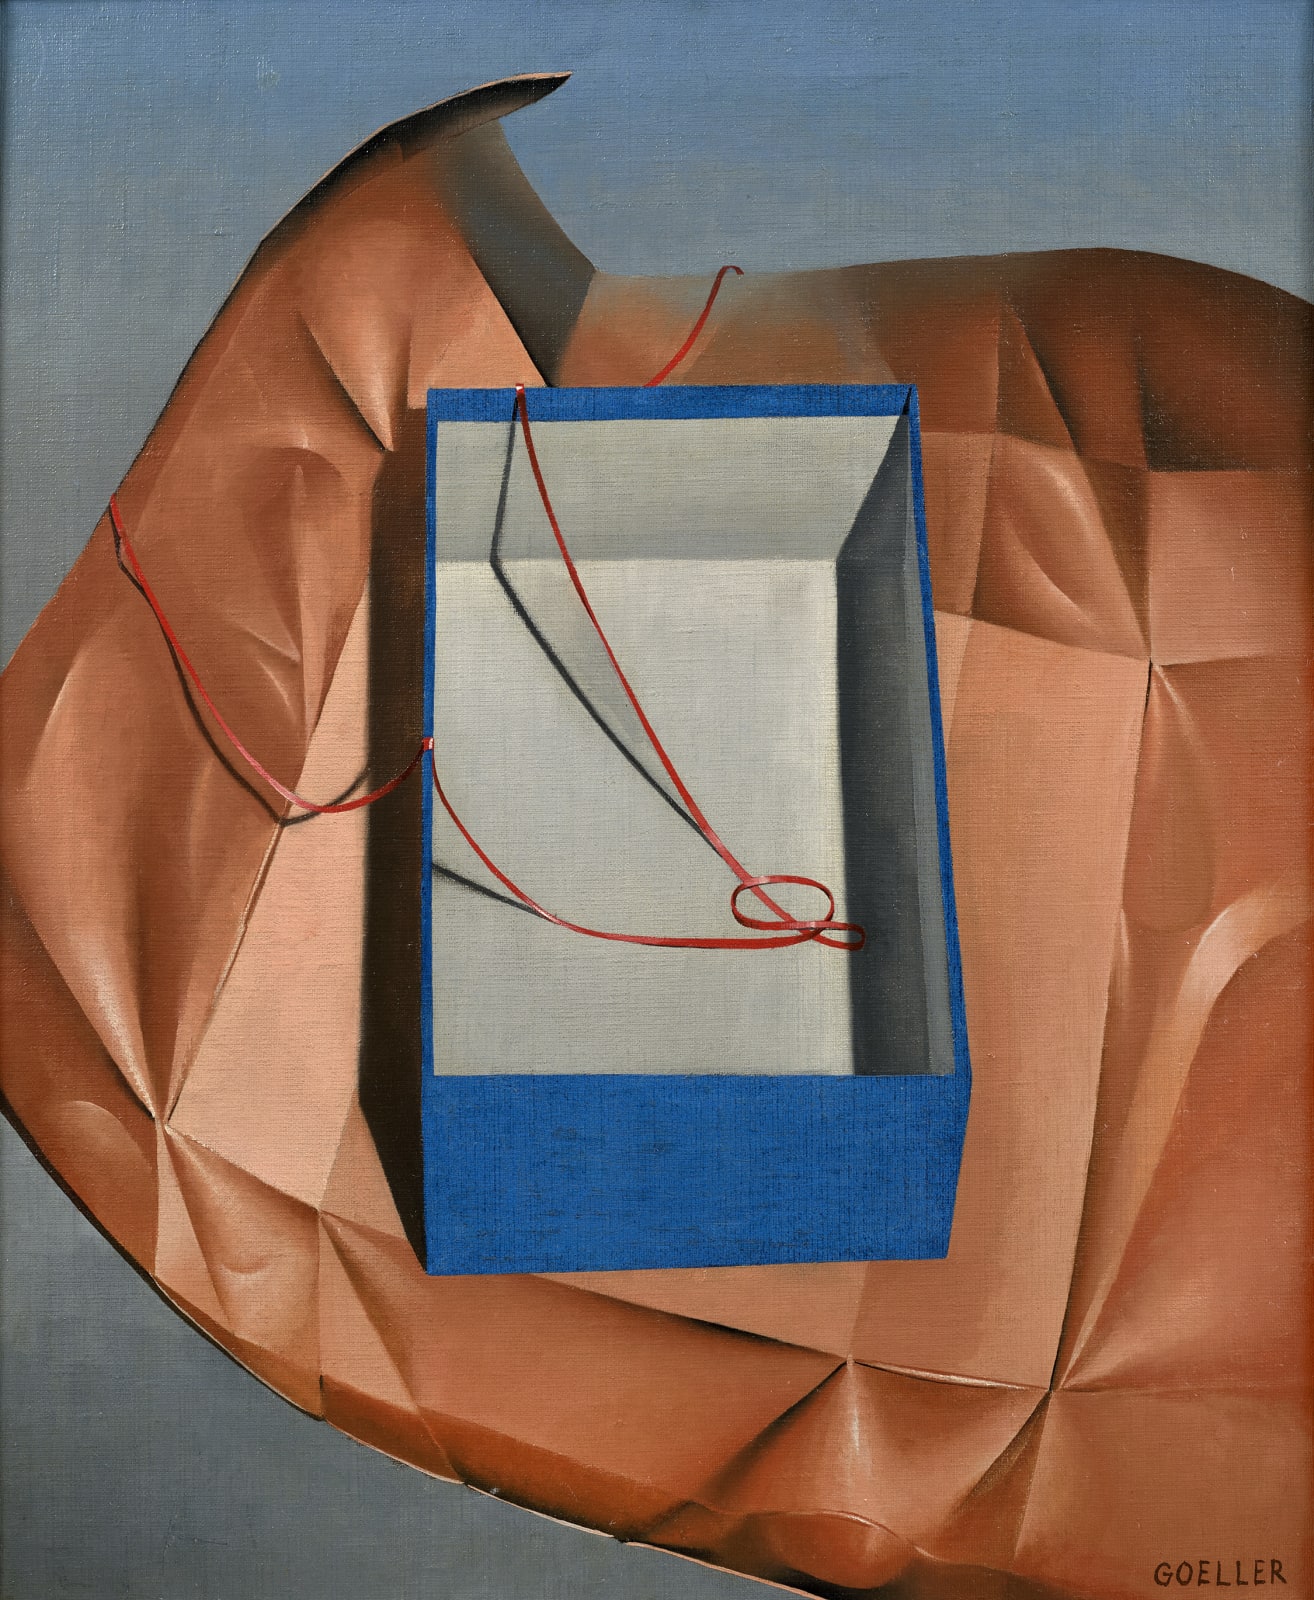 Charles Goeller, The Blue Box, c. 1930